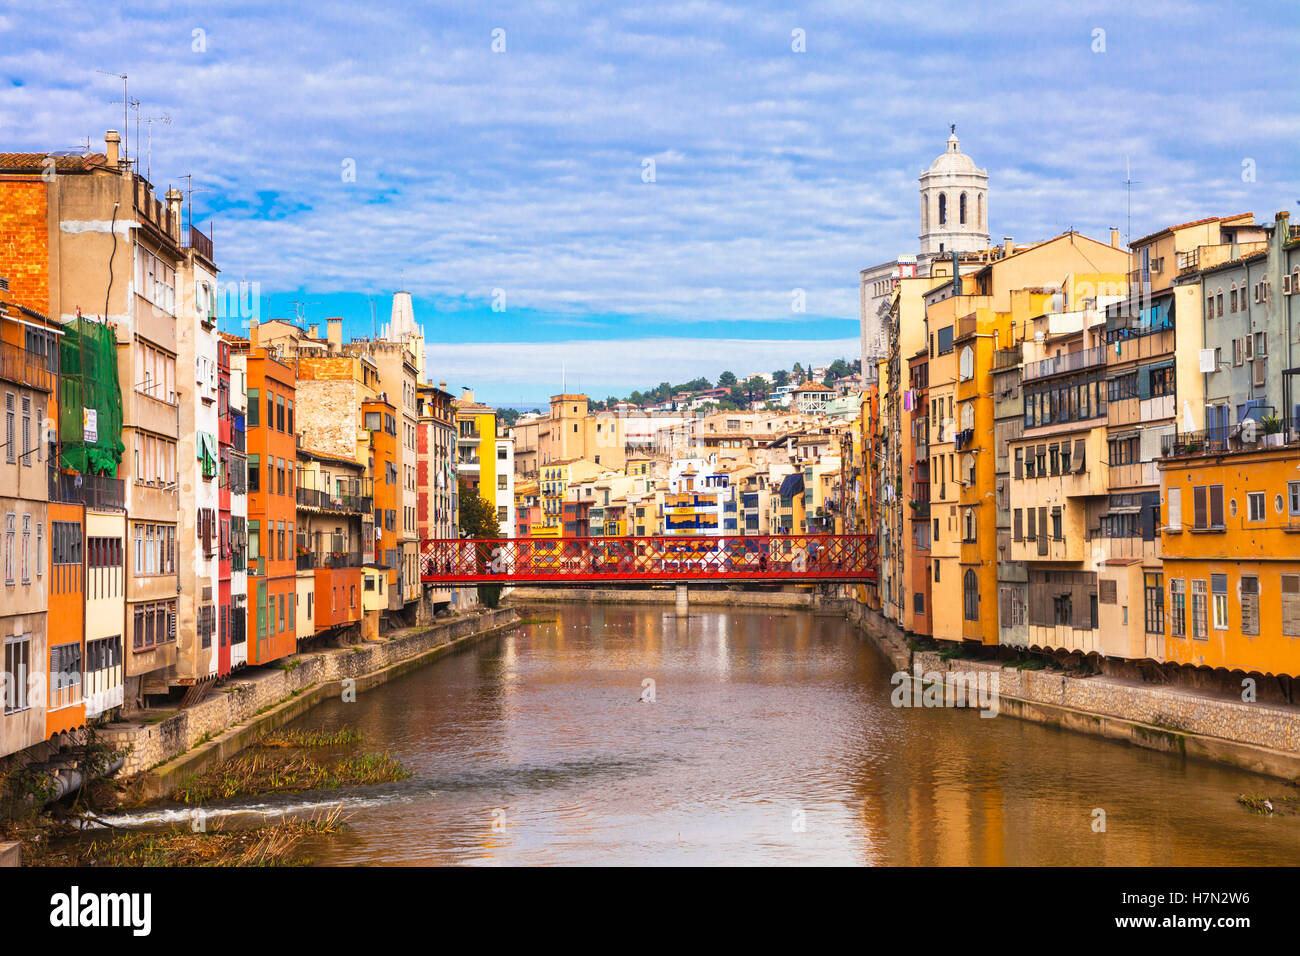 Girona - belle ville colorée en Catalogne, Espagne Banque D'Images